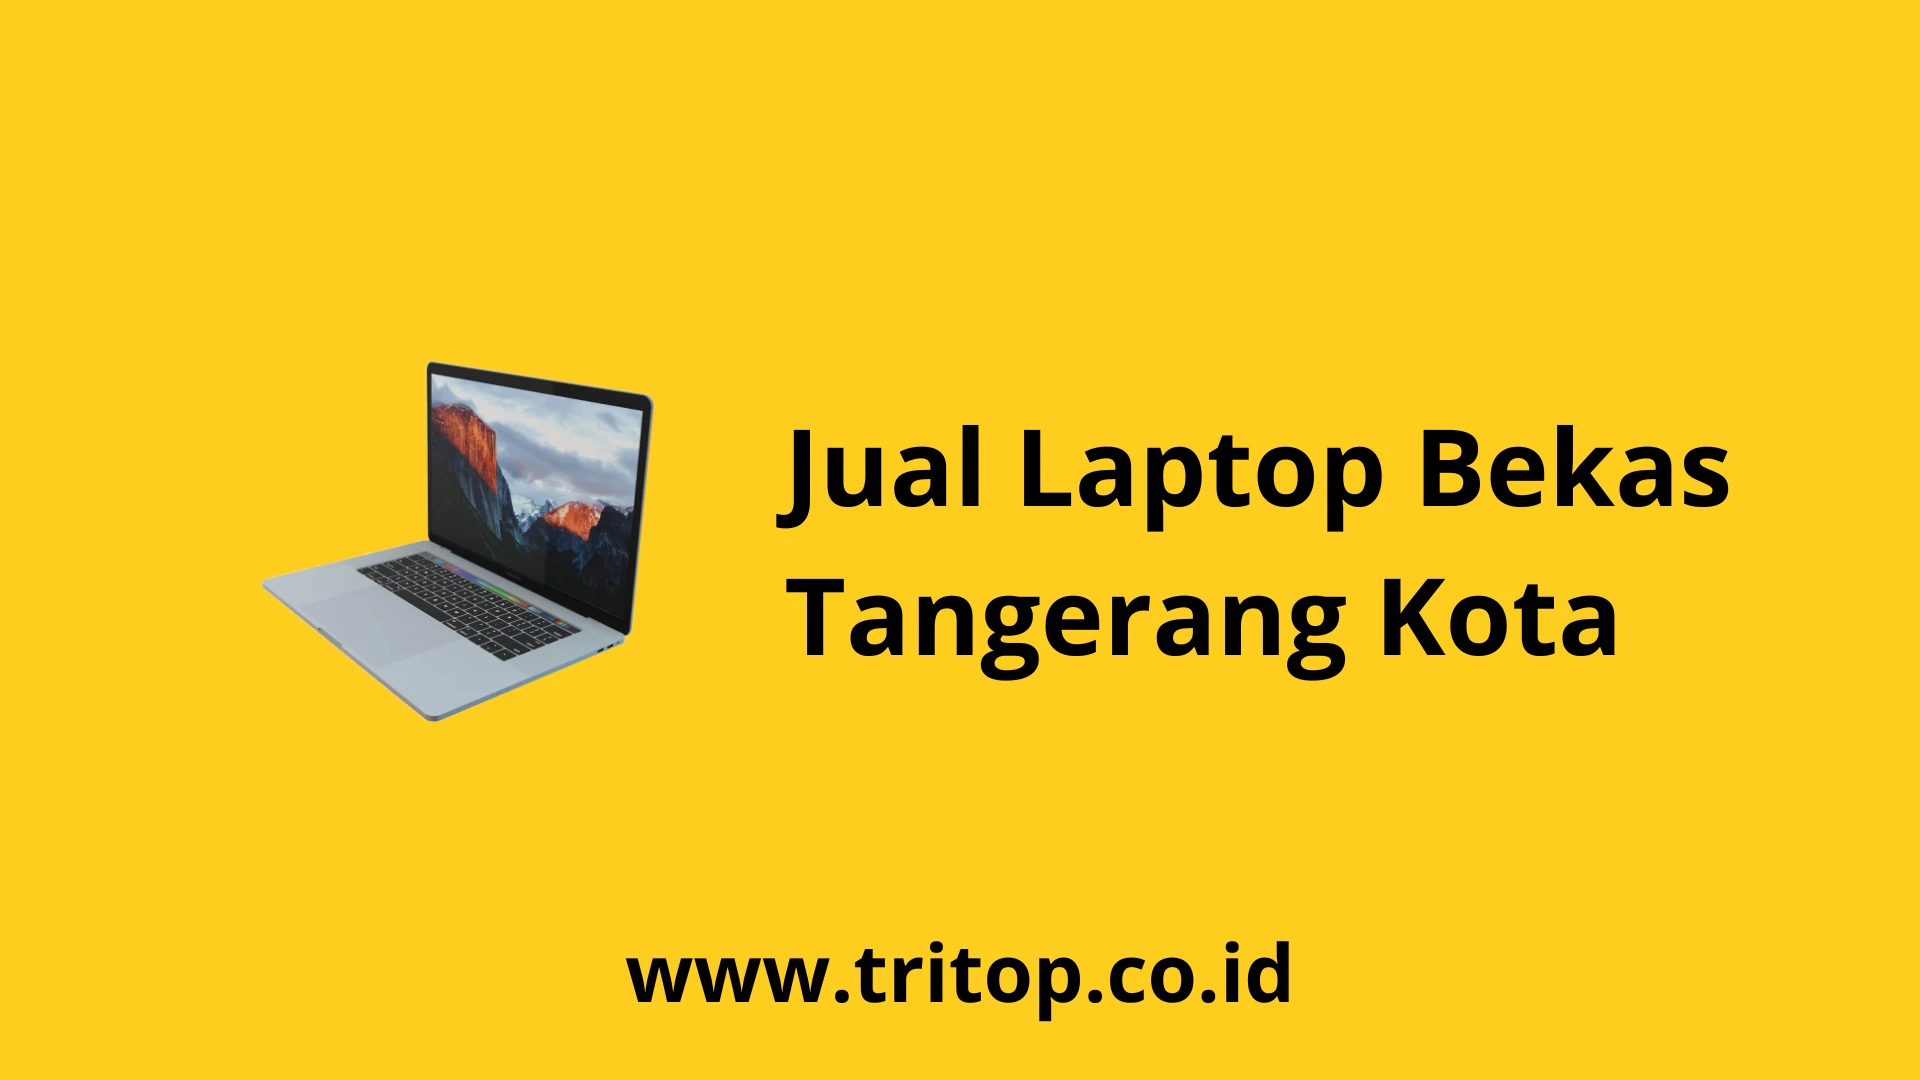 Jual Laptop Bekas Tangerang Kota